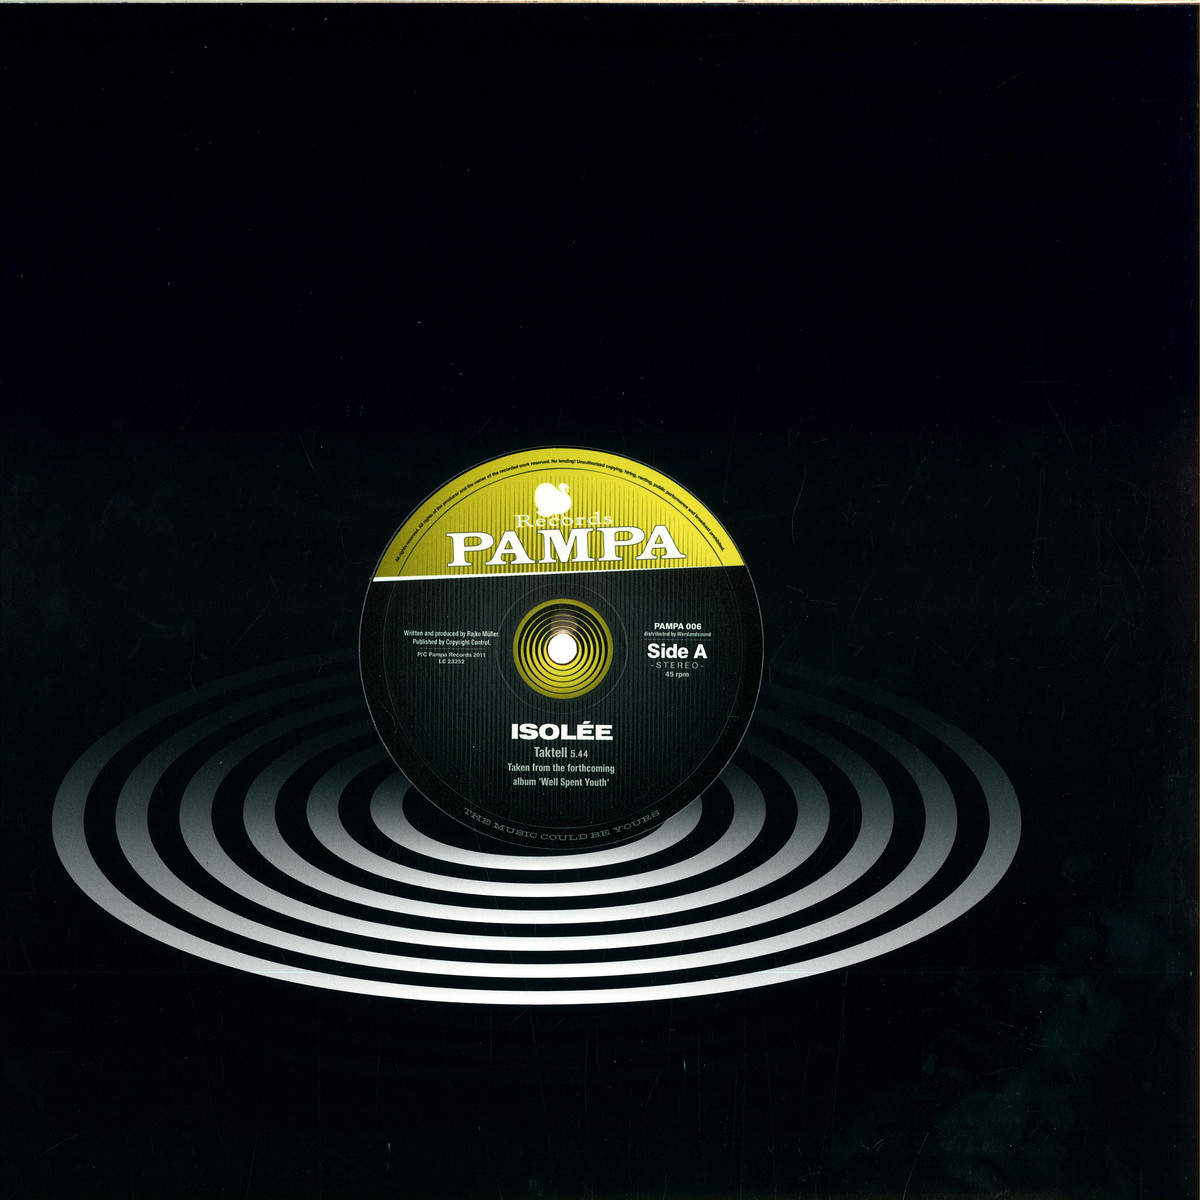 Isolee, Robag Wruhme - Taktell, Thora Vukk / PAMPA PAMPA006 - Vinyl